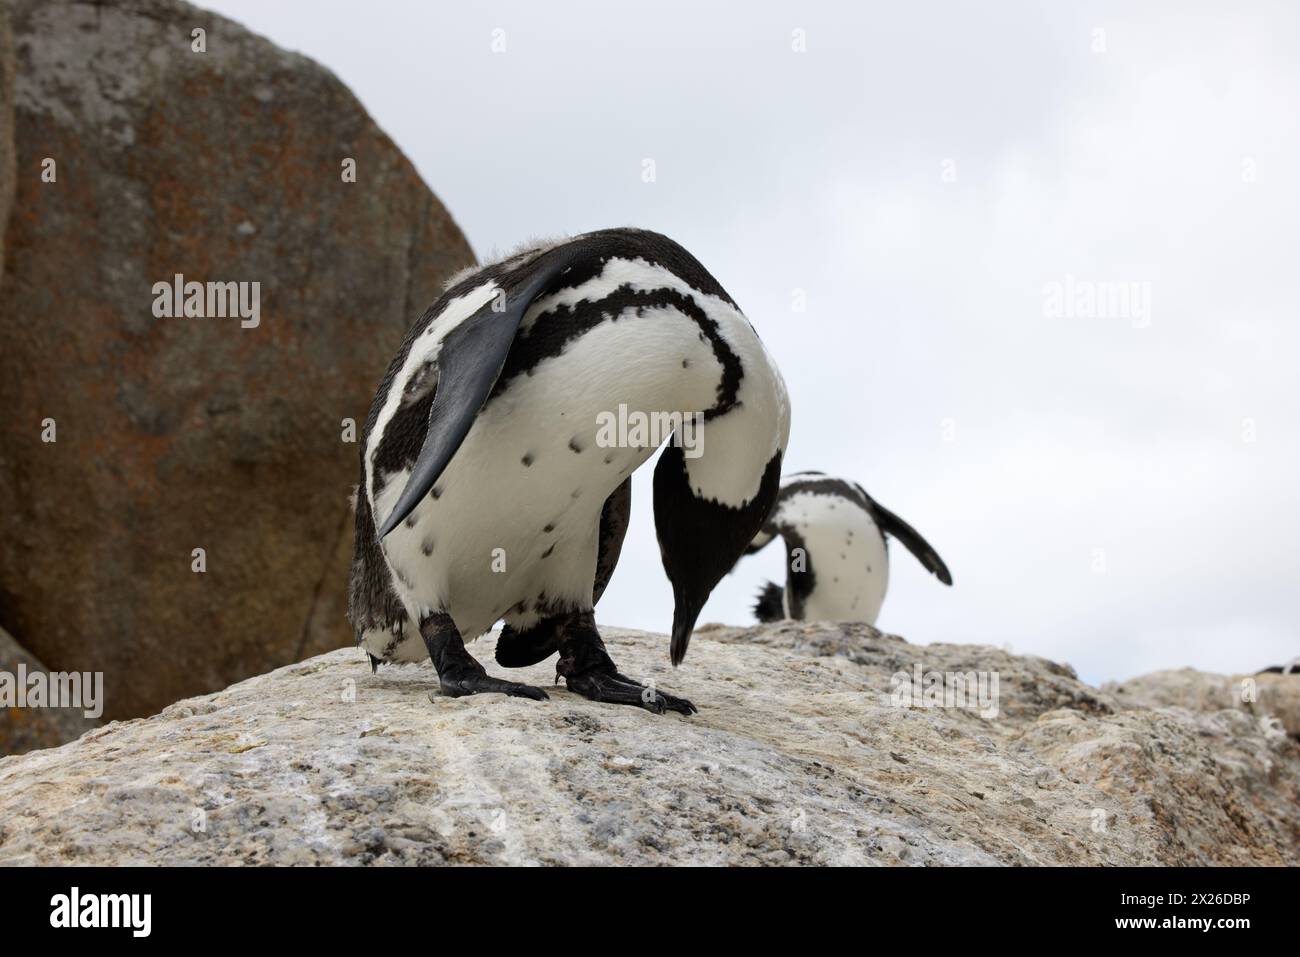 Pinguini, rocce o massi all'aperto per turisti, fauna selvatica e paesaggi in ambiente o ecologia. Uccelli, biologia e natura selvaggia per l'ecosistema Foto Stock